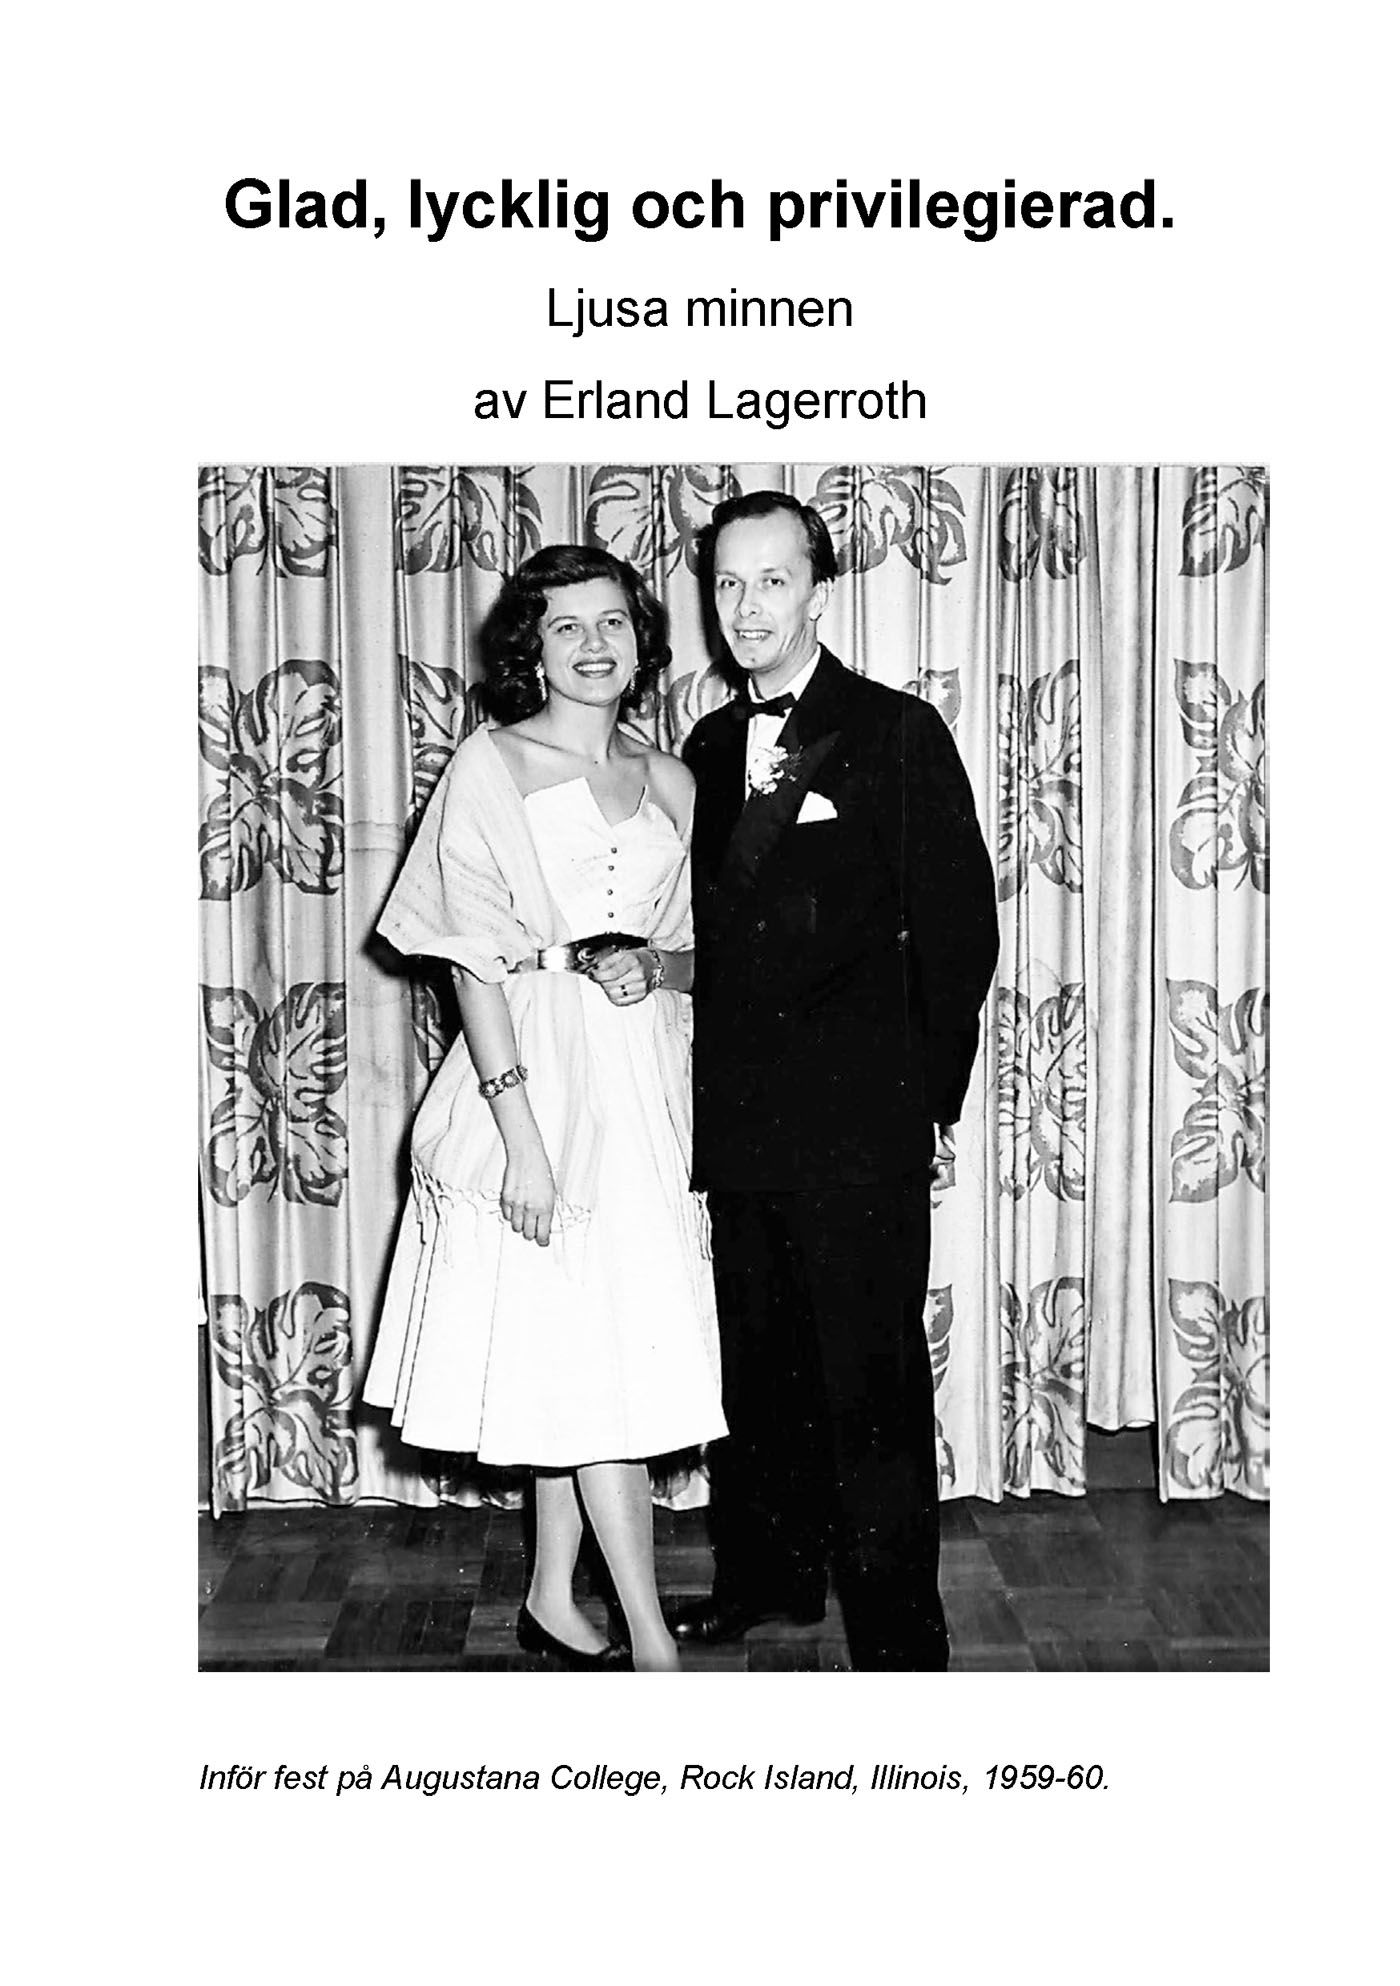 Glad, lycklig och privilegierad - Ljusa minnen, e-bok av Erland Lagerroth